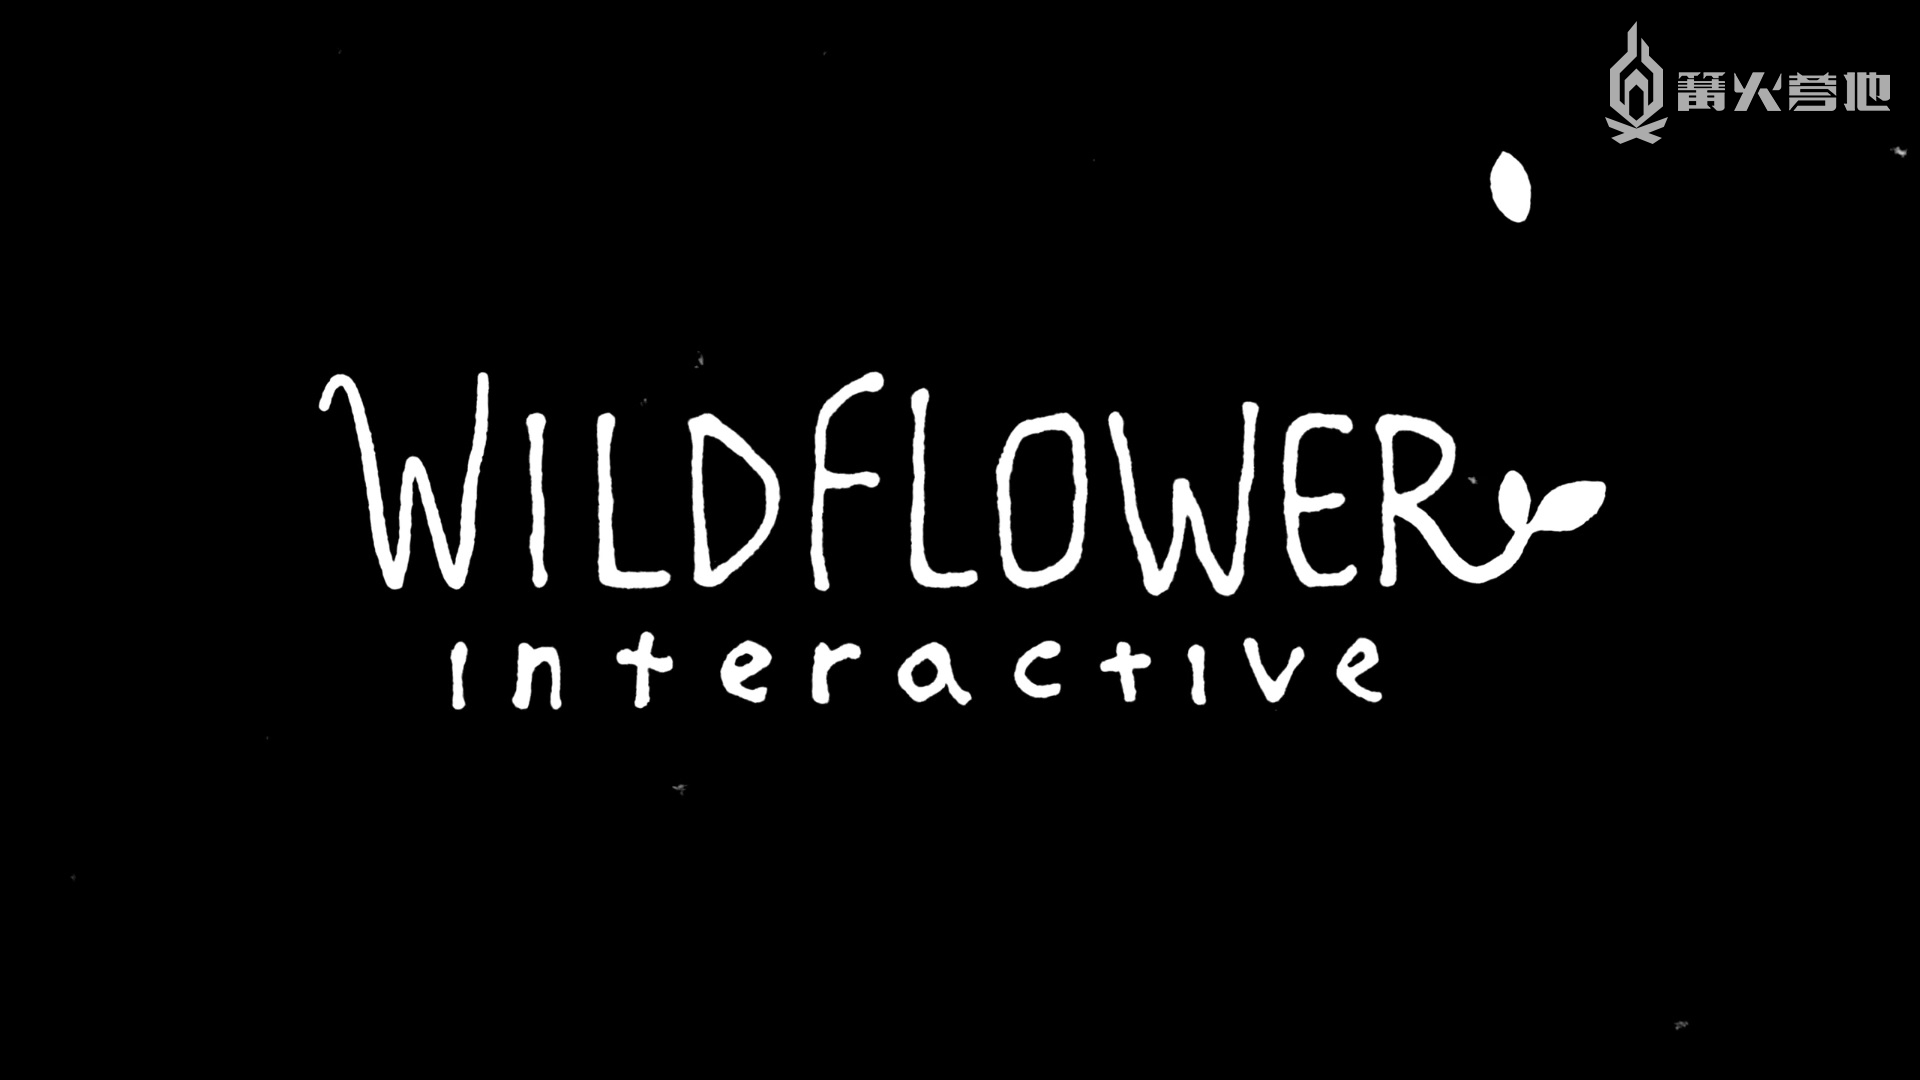 前顽皮狗制作人 Bruce Straley 宣布重返游戏业，并成立全新工作室 Wildflower Interactive